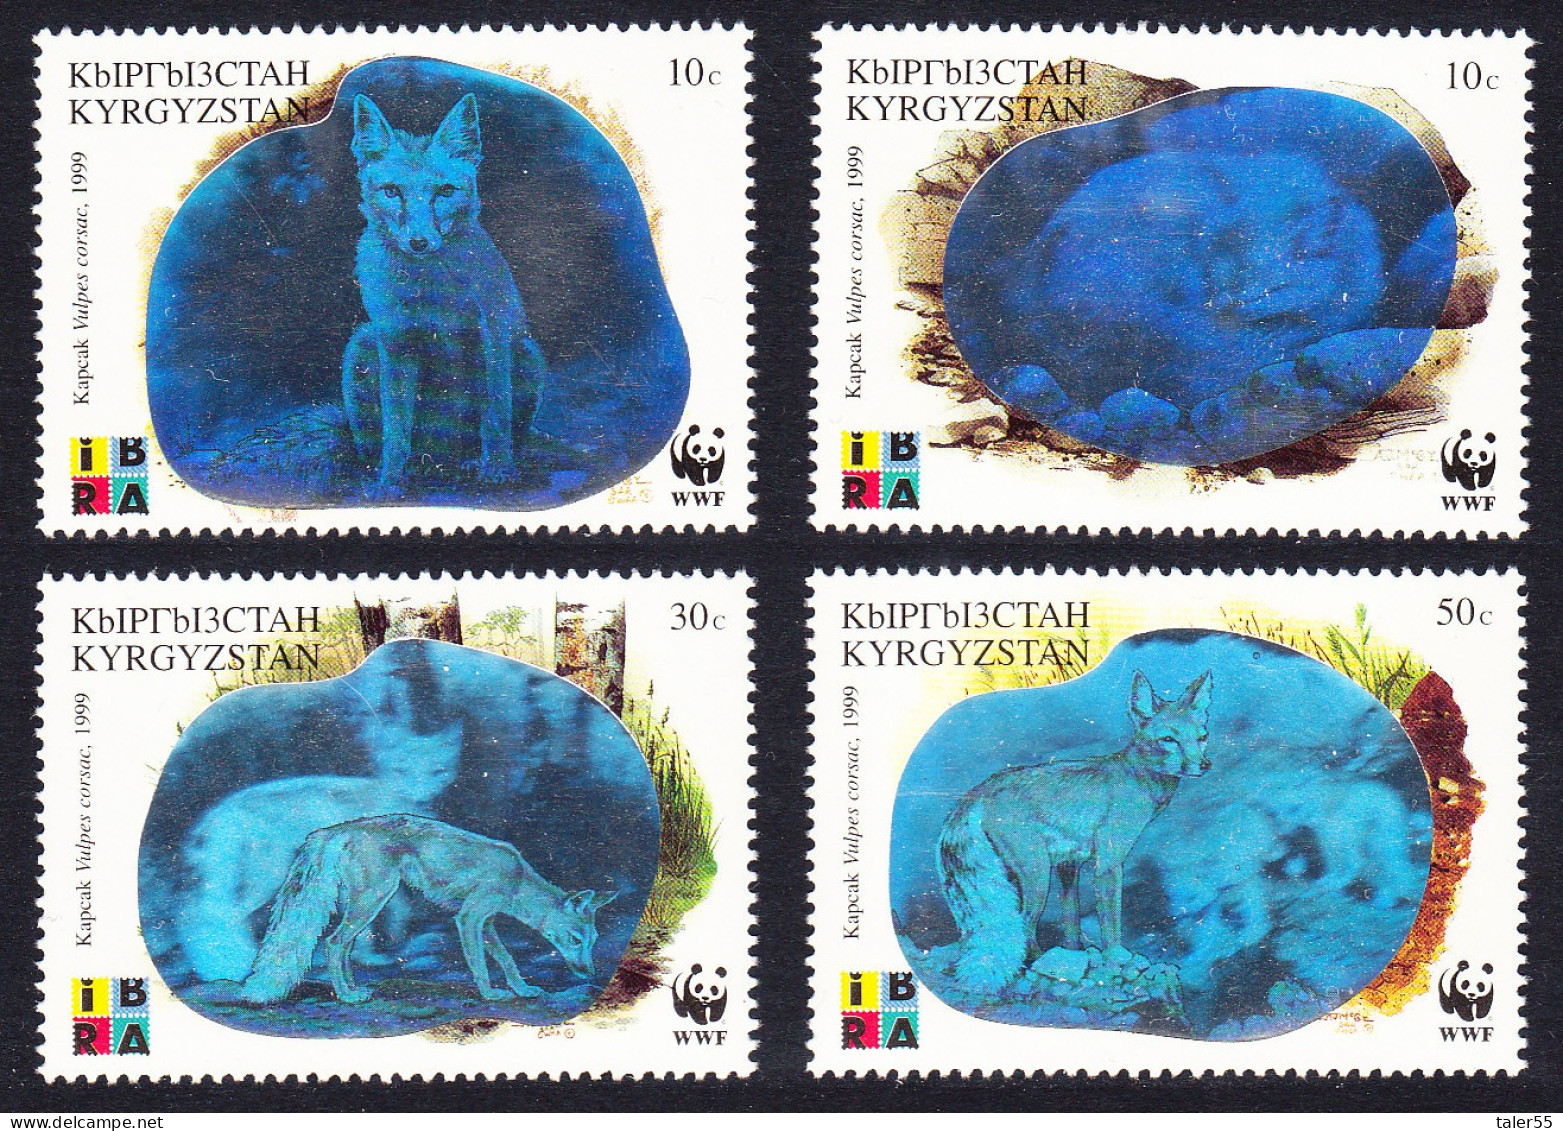 Kyrgyzstan WWF Corsac Fox Holographic Stamps 4v 1999 MNH SG#163-166 MI#172-175 Sc#123 A-d - Kyrgyzstan